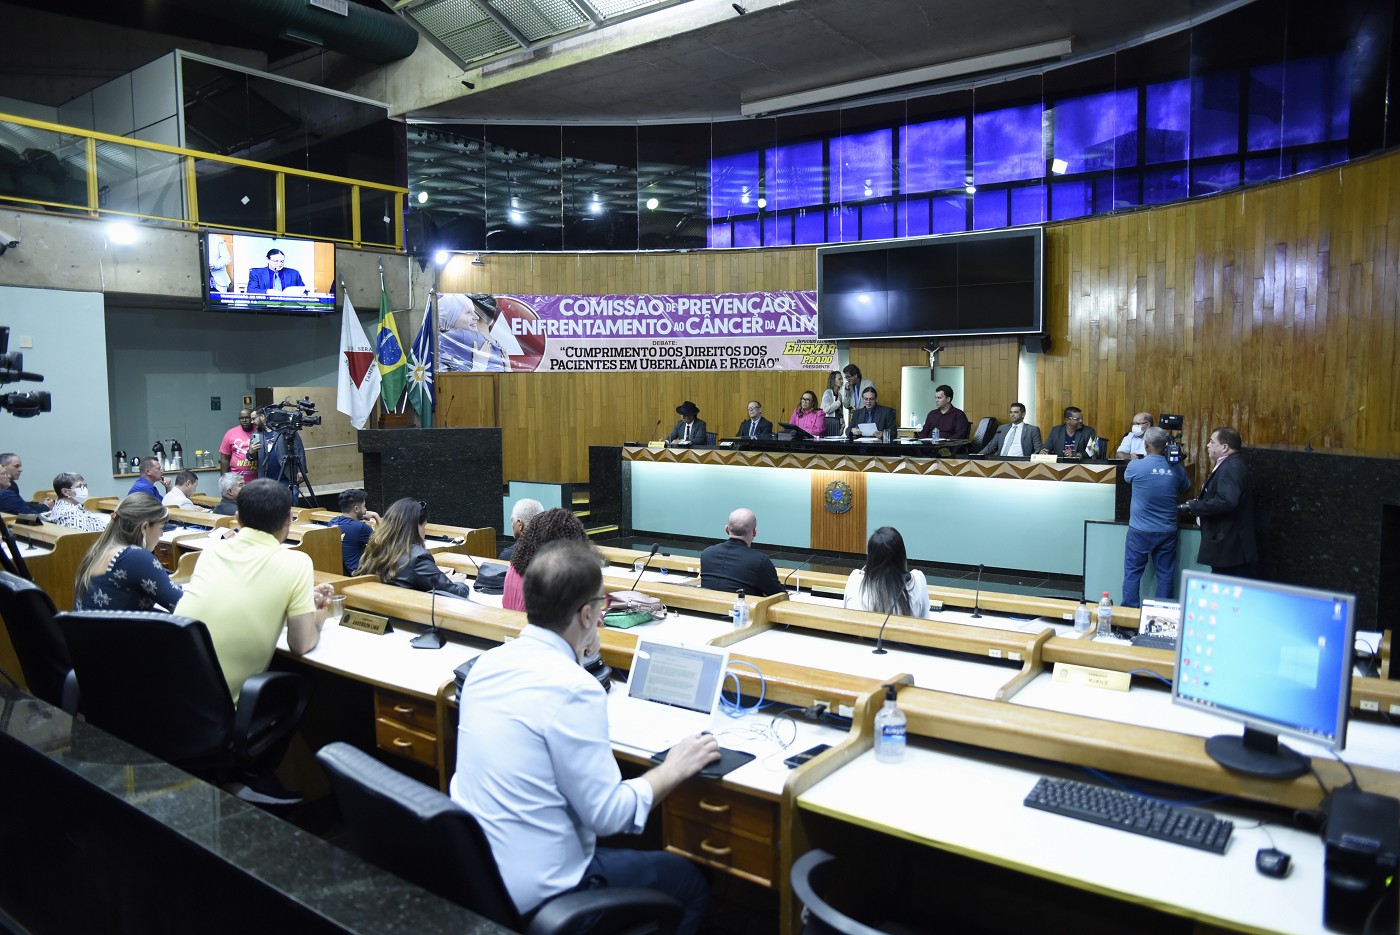 Comissão de Prevenção e Enfrentamento ao Câncer - debate sobre o cumprimento das leis relativas à doença em Minas